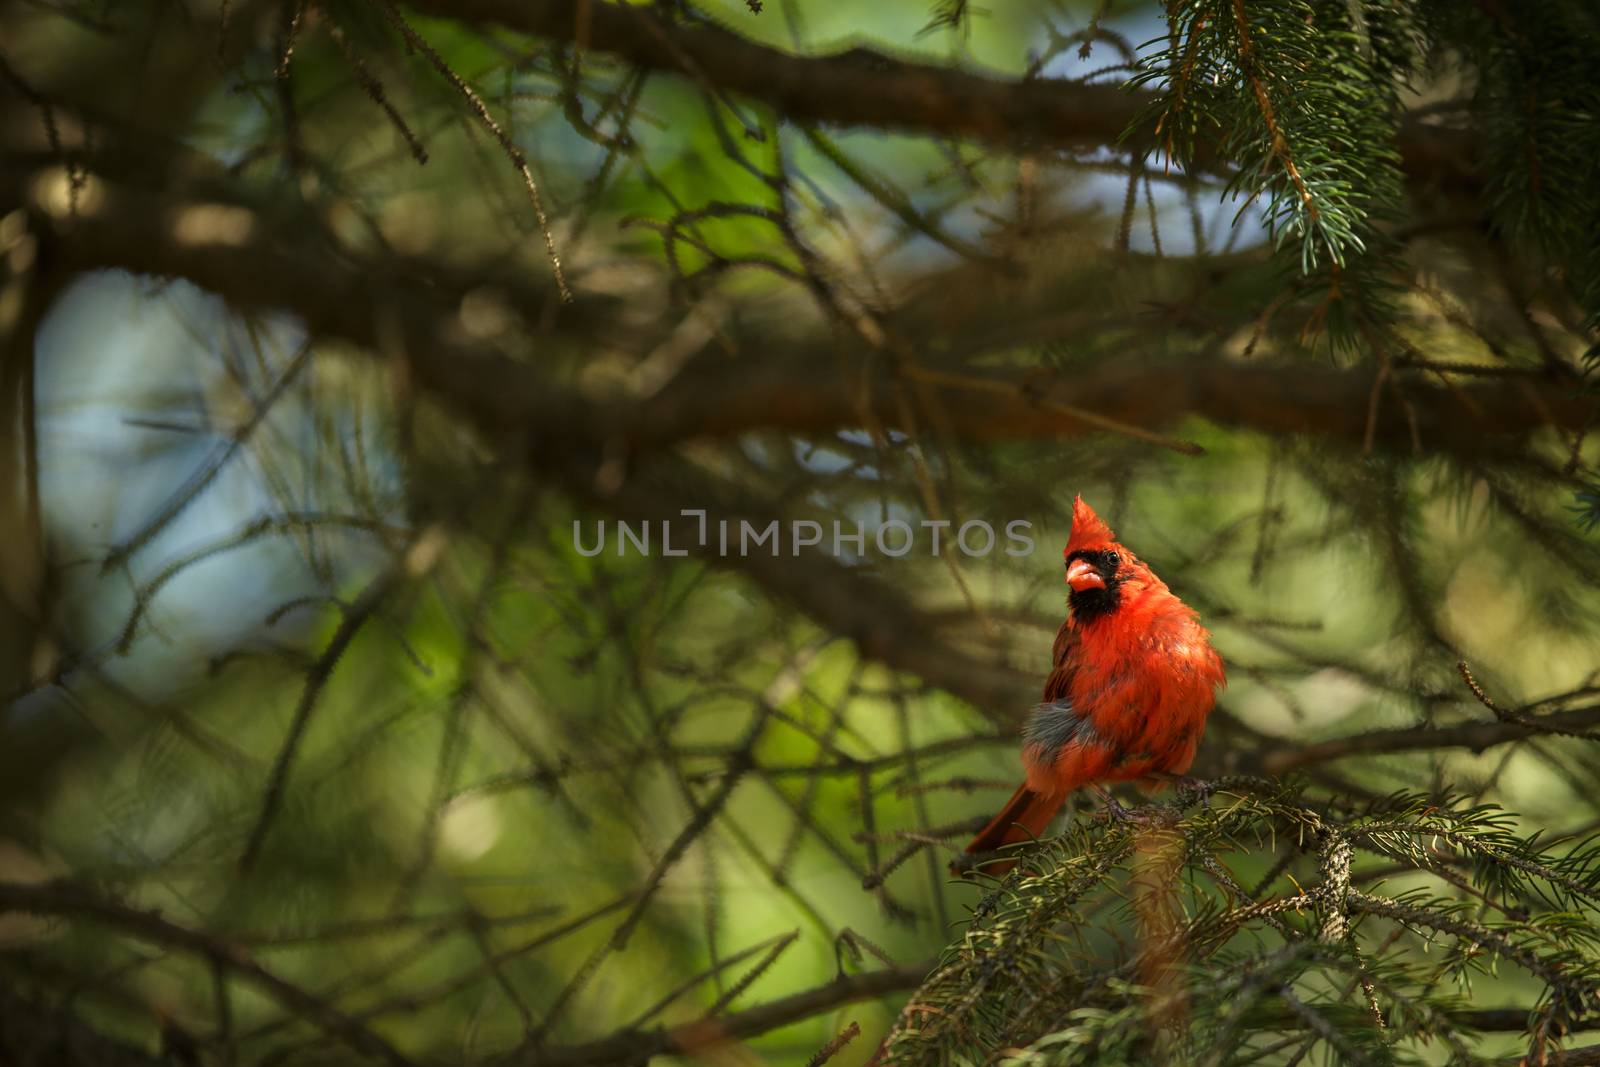 Northern cardinal (Cardinalis cardinals) by viktor_cap